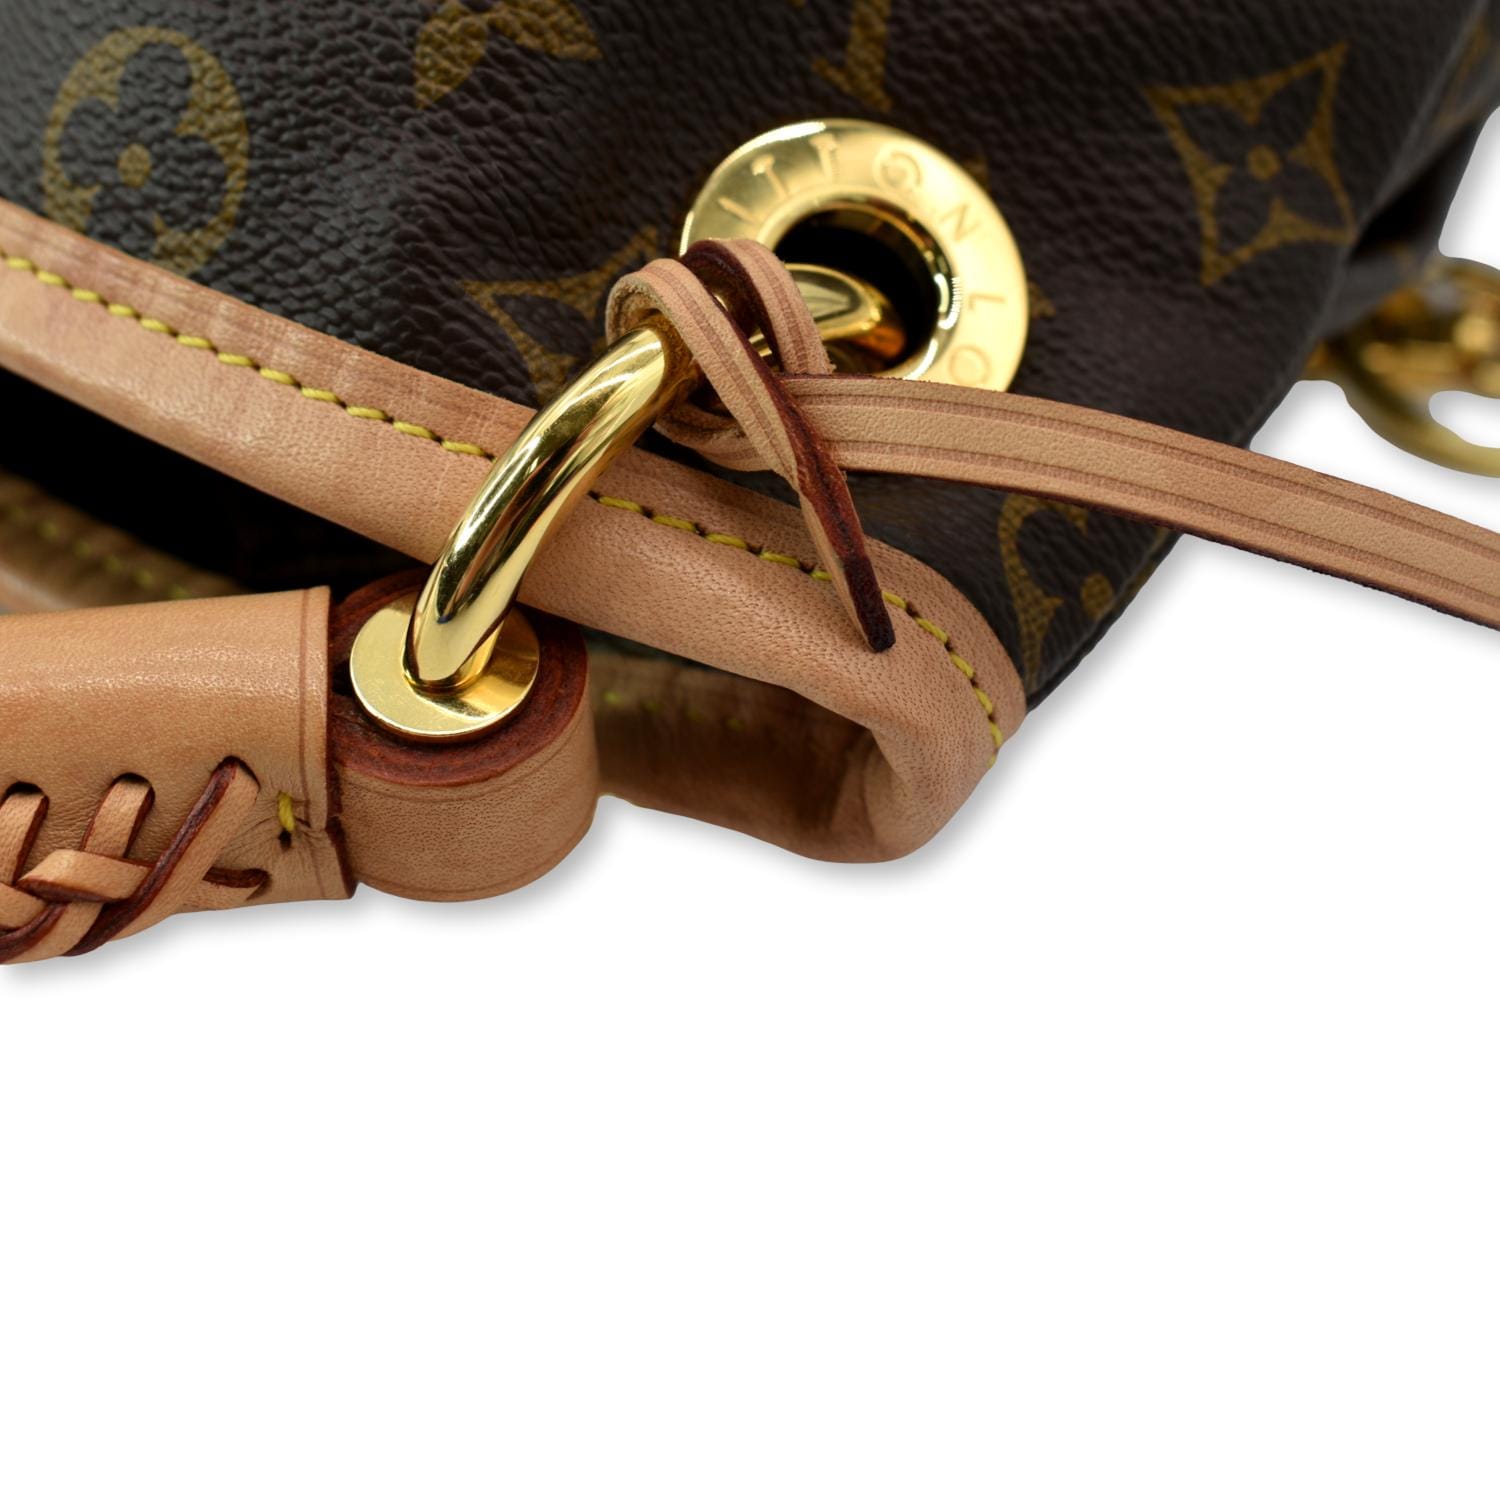 Phoenix Boutique - Louis Vuitton Artsy Shoulder Bag W/ Braided Handle#LV# Hobo#